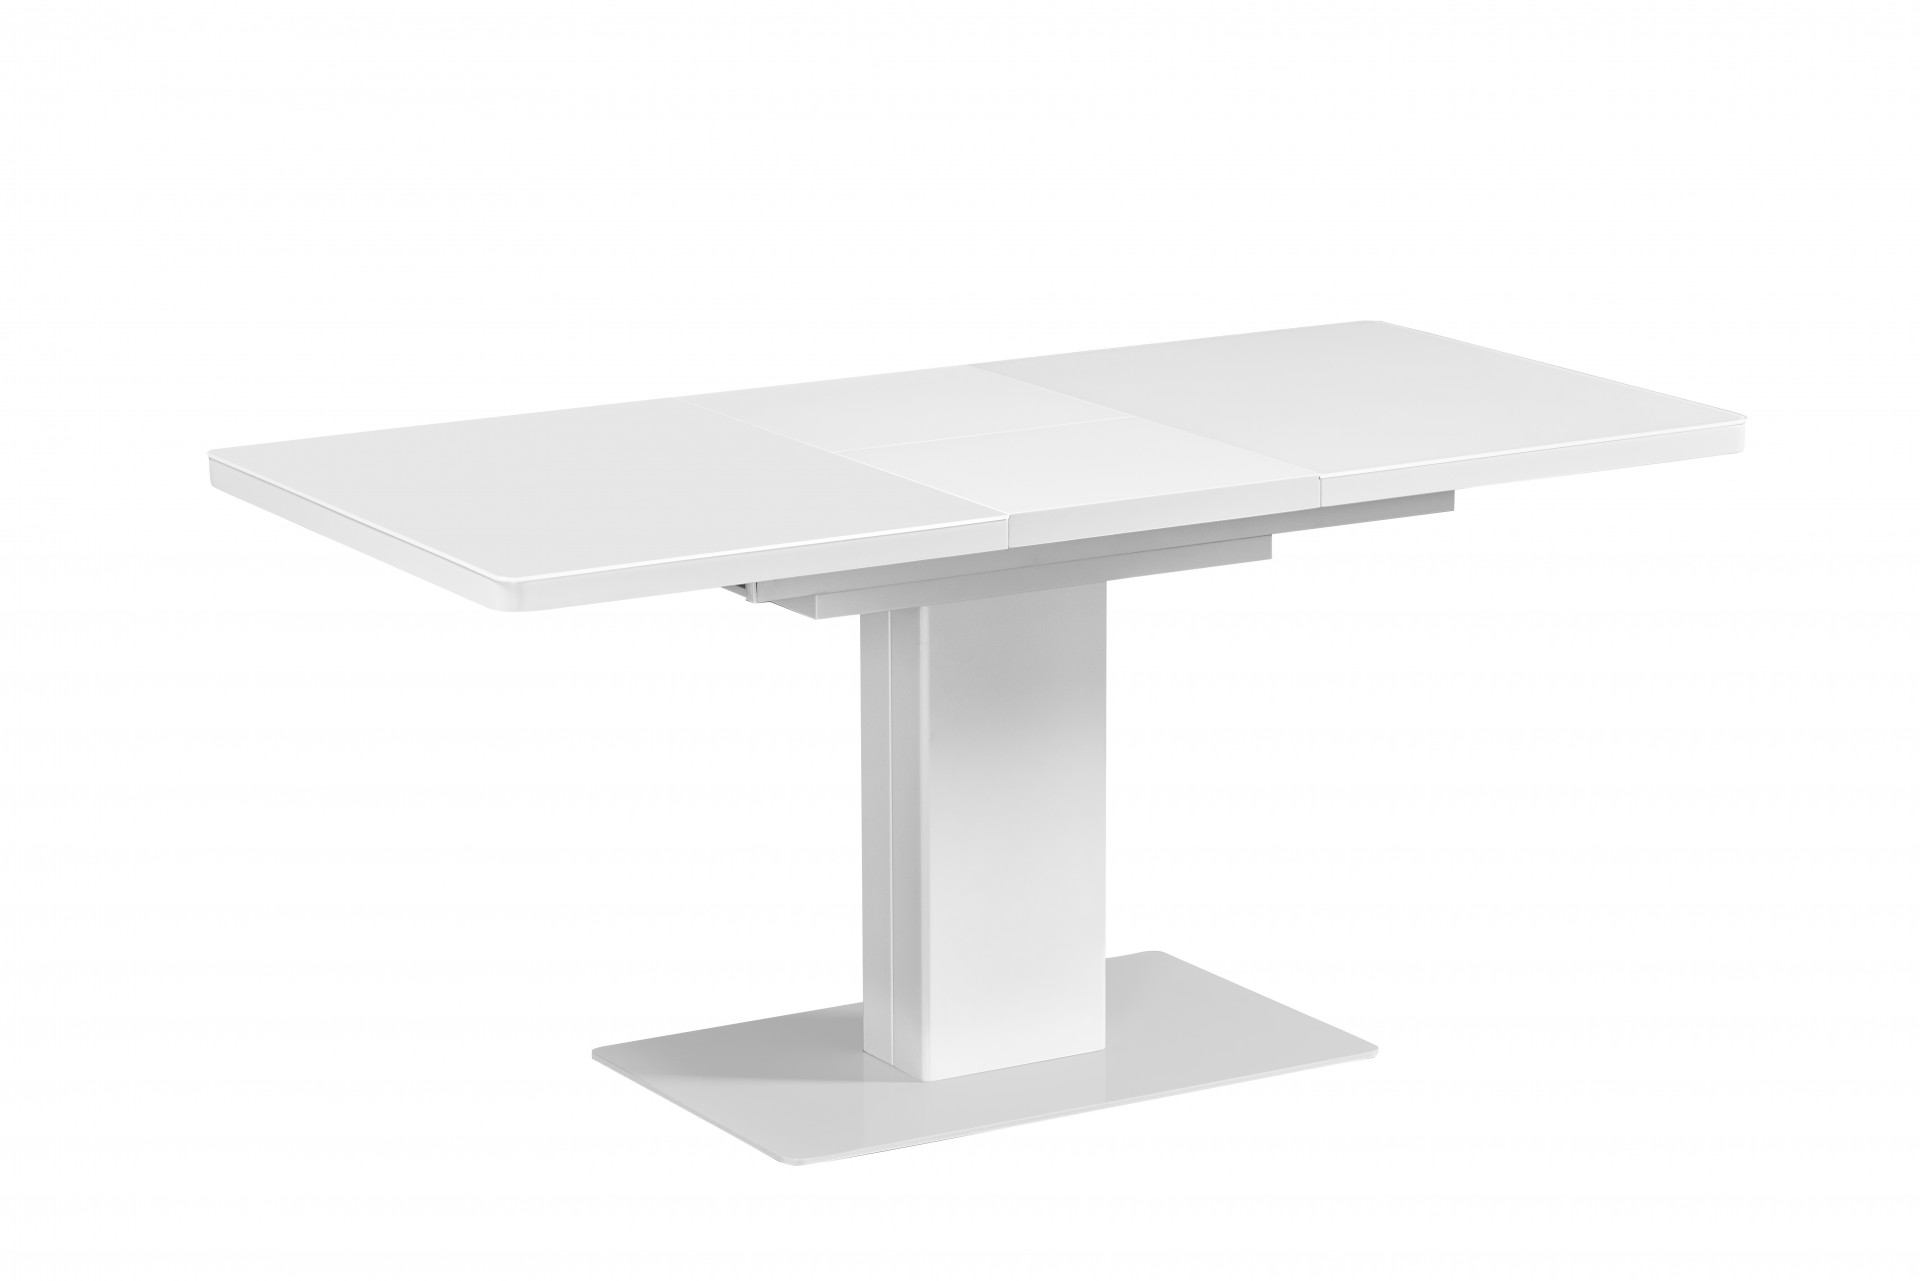 Стол обеденный раскладной IMP- Slim 120-160*80*75 см (белый)